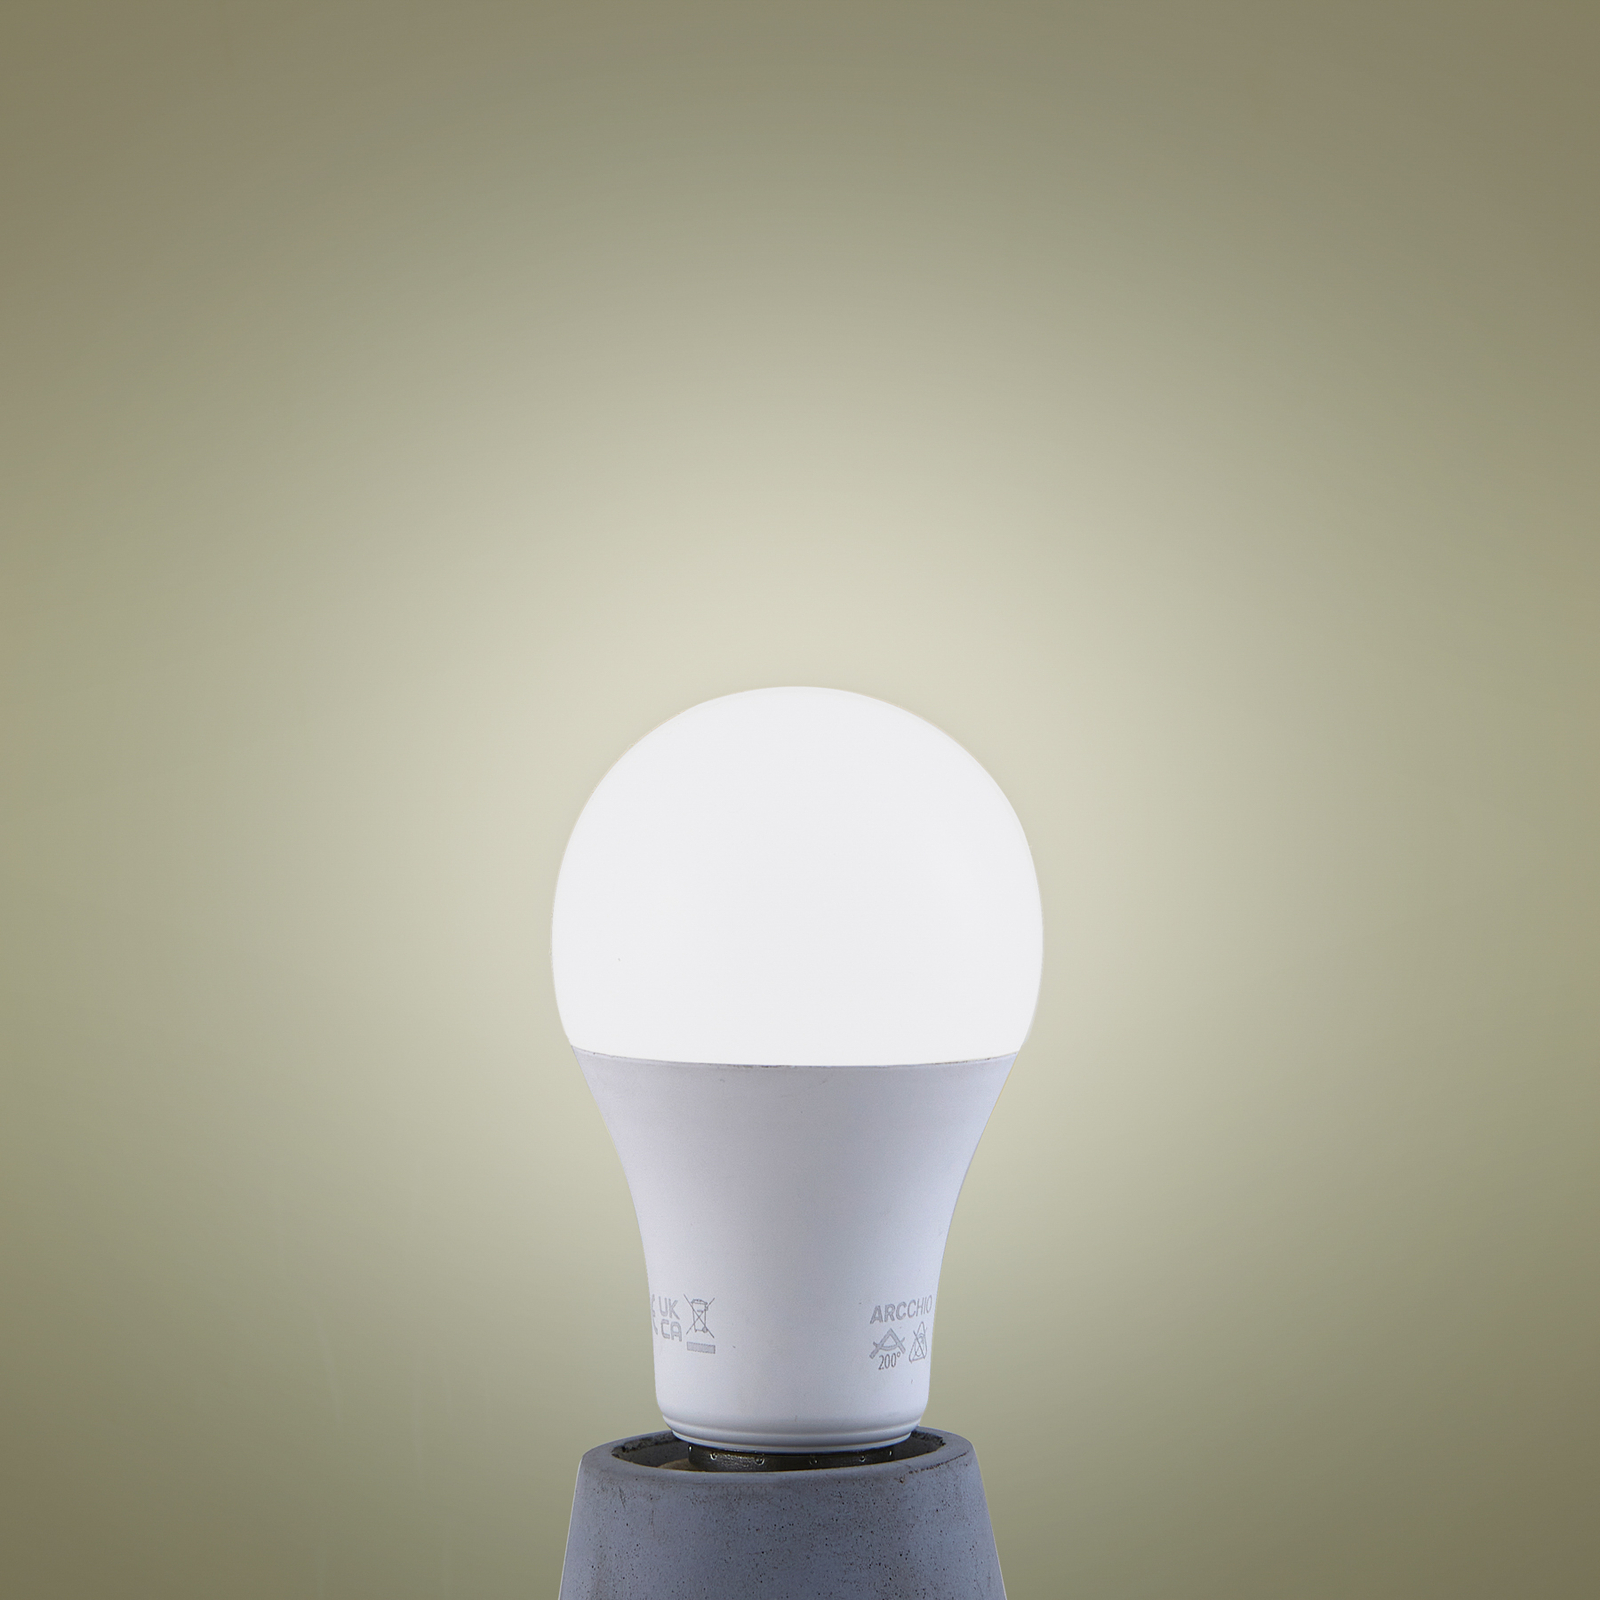 LED žiarovka, opál, E27, 7,2 W, 4000K, 1521 lumenov